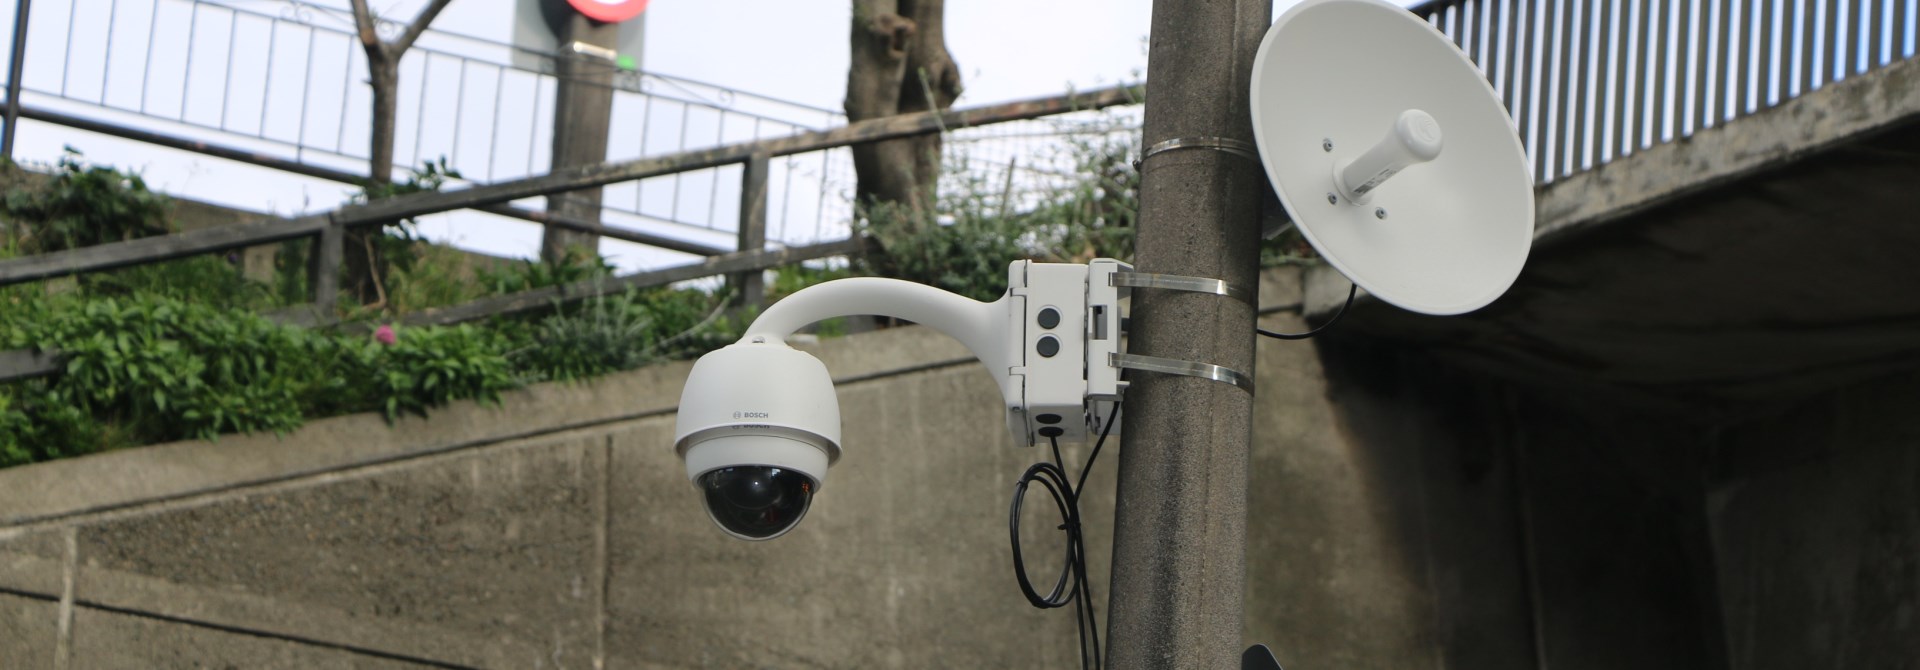 CCTV camera on a pole.